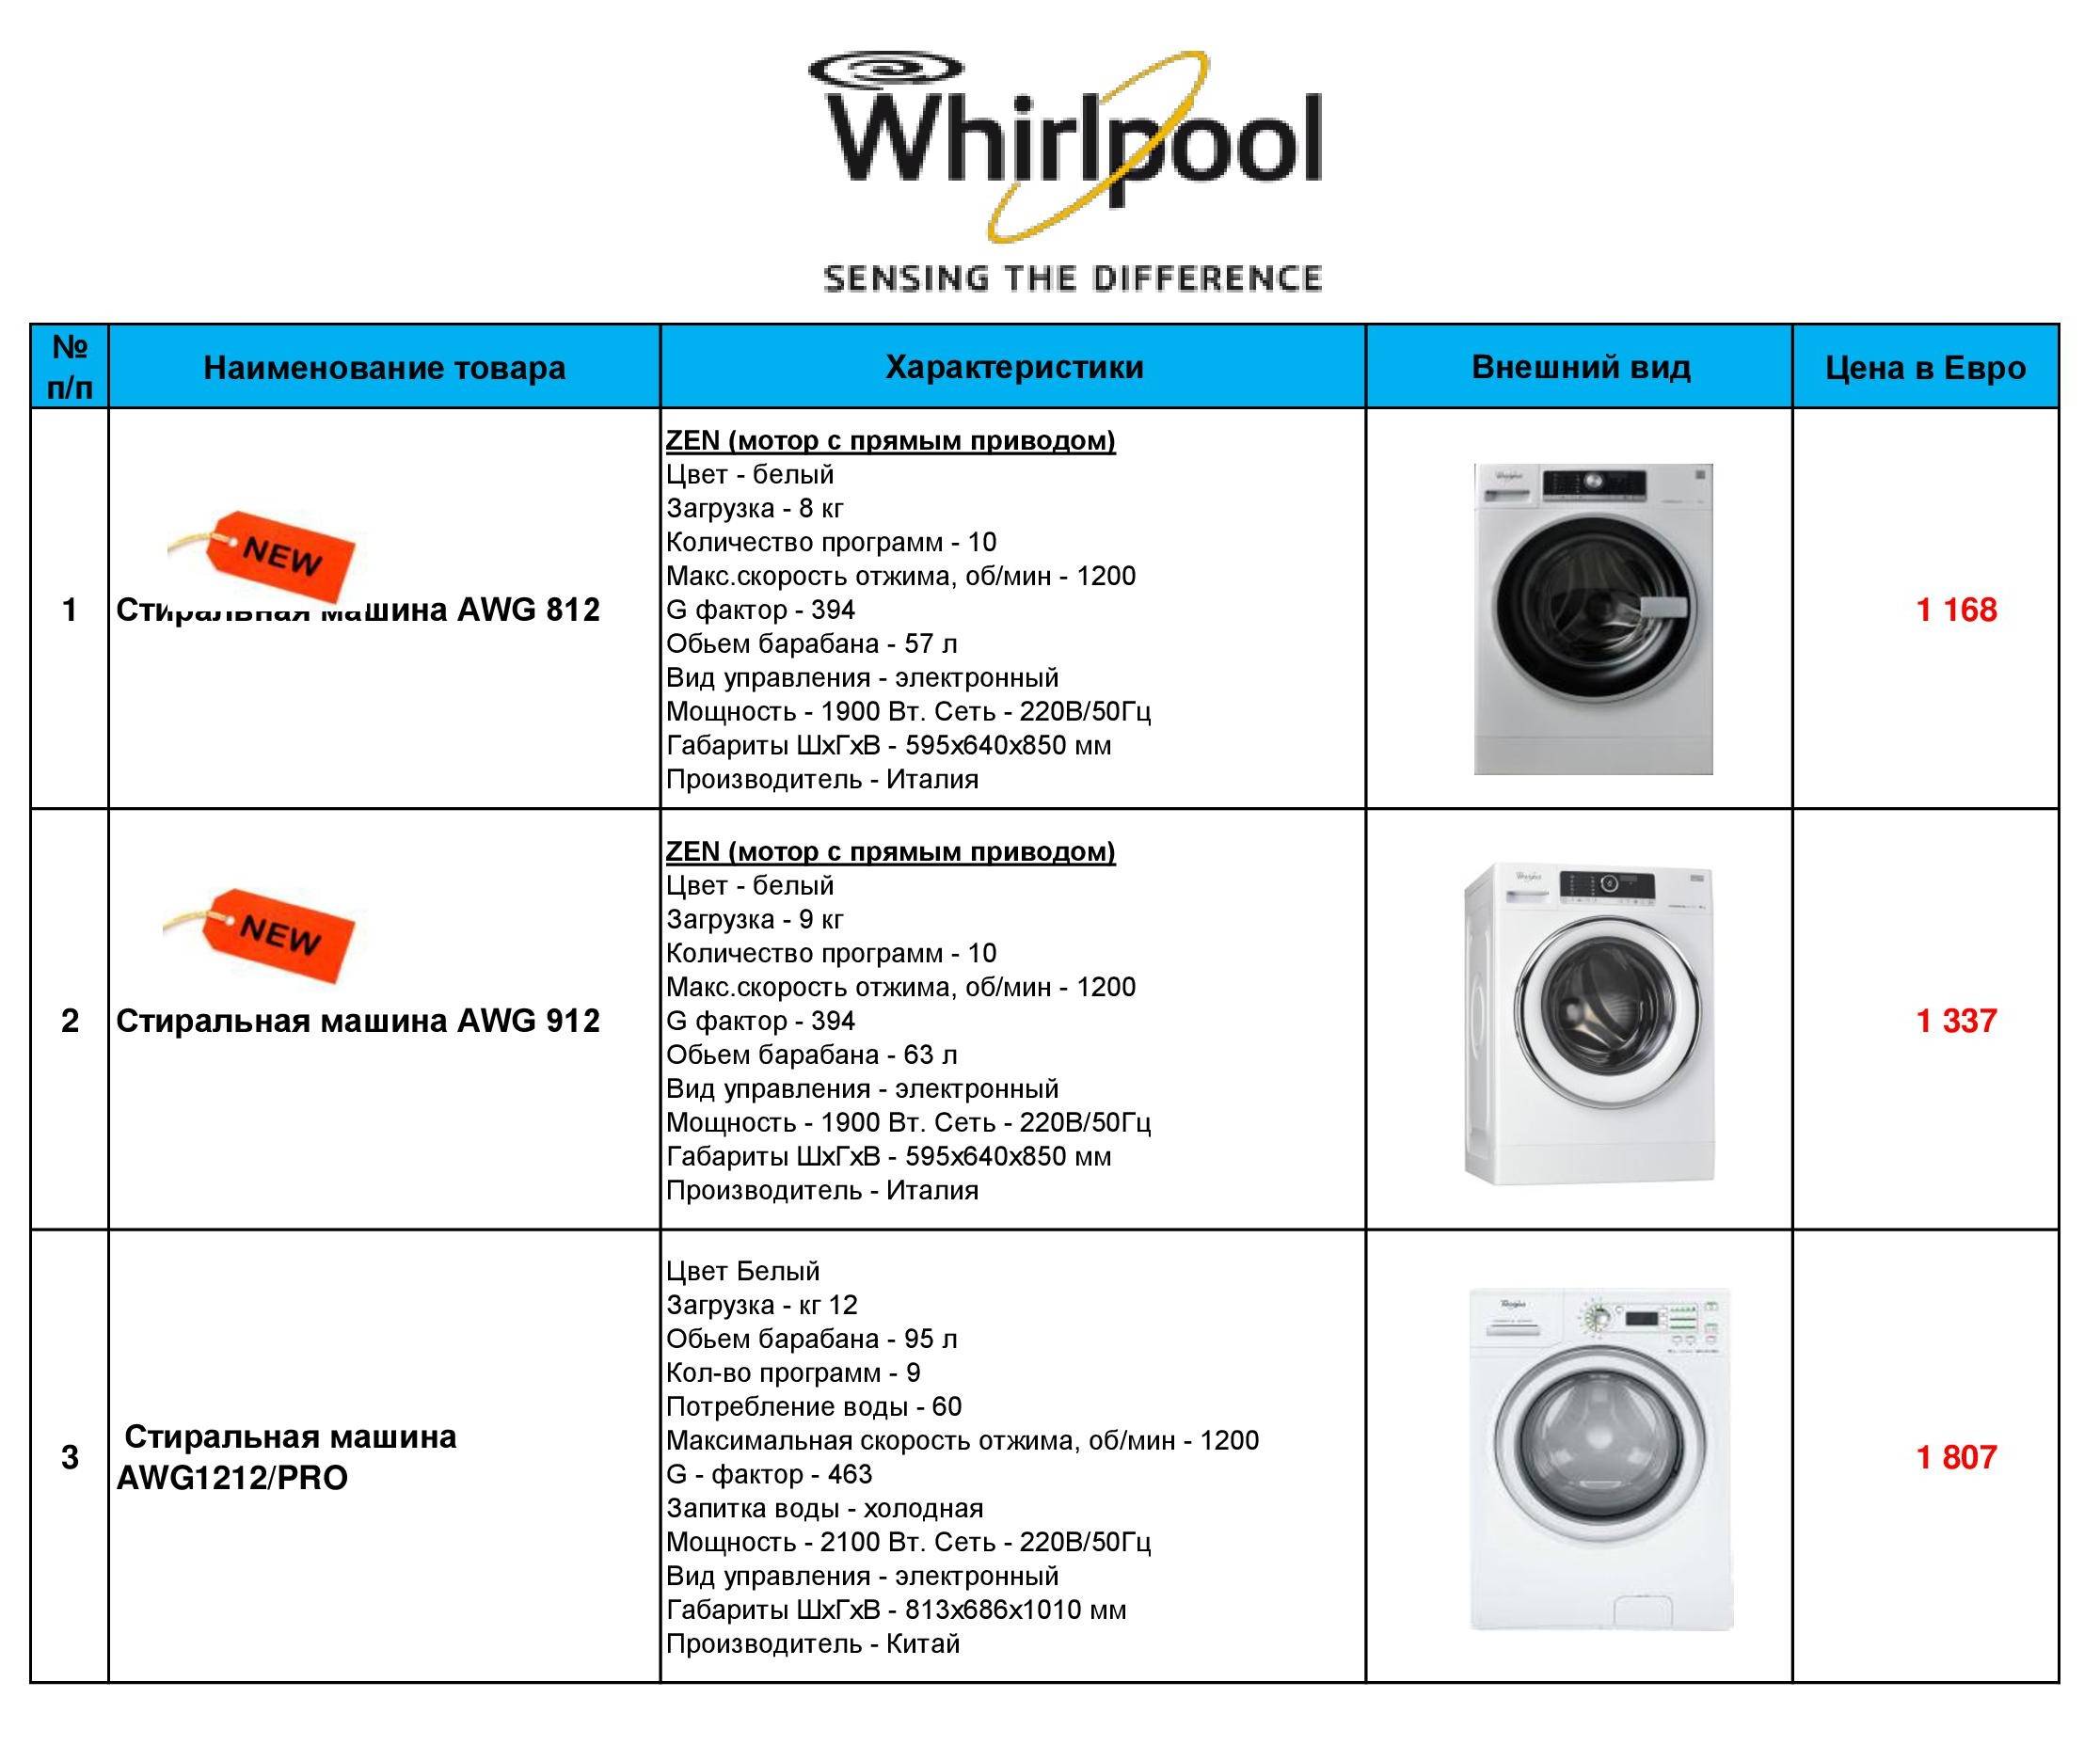 Выбор стиральной машины с фронтальной загрузкой: 8 критериев и тонкостей для покупателей, топ лучших моделей, преимущества и недостатки